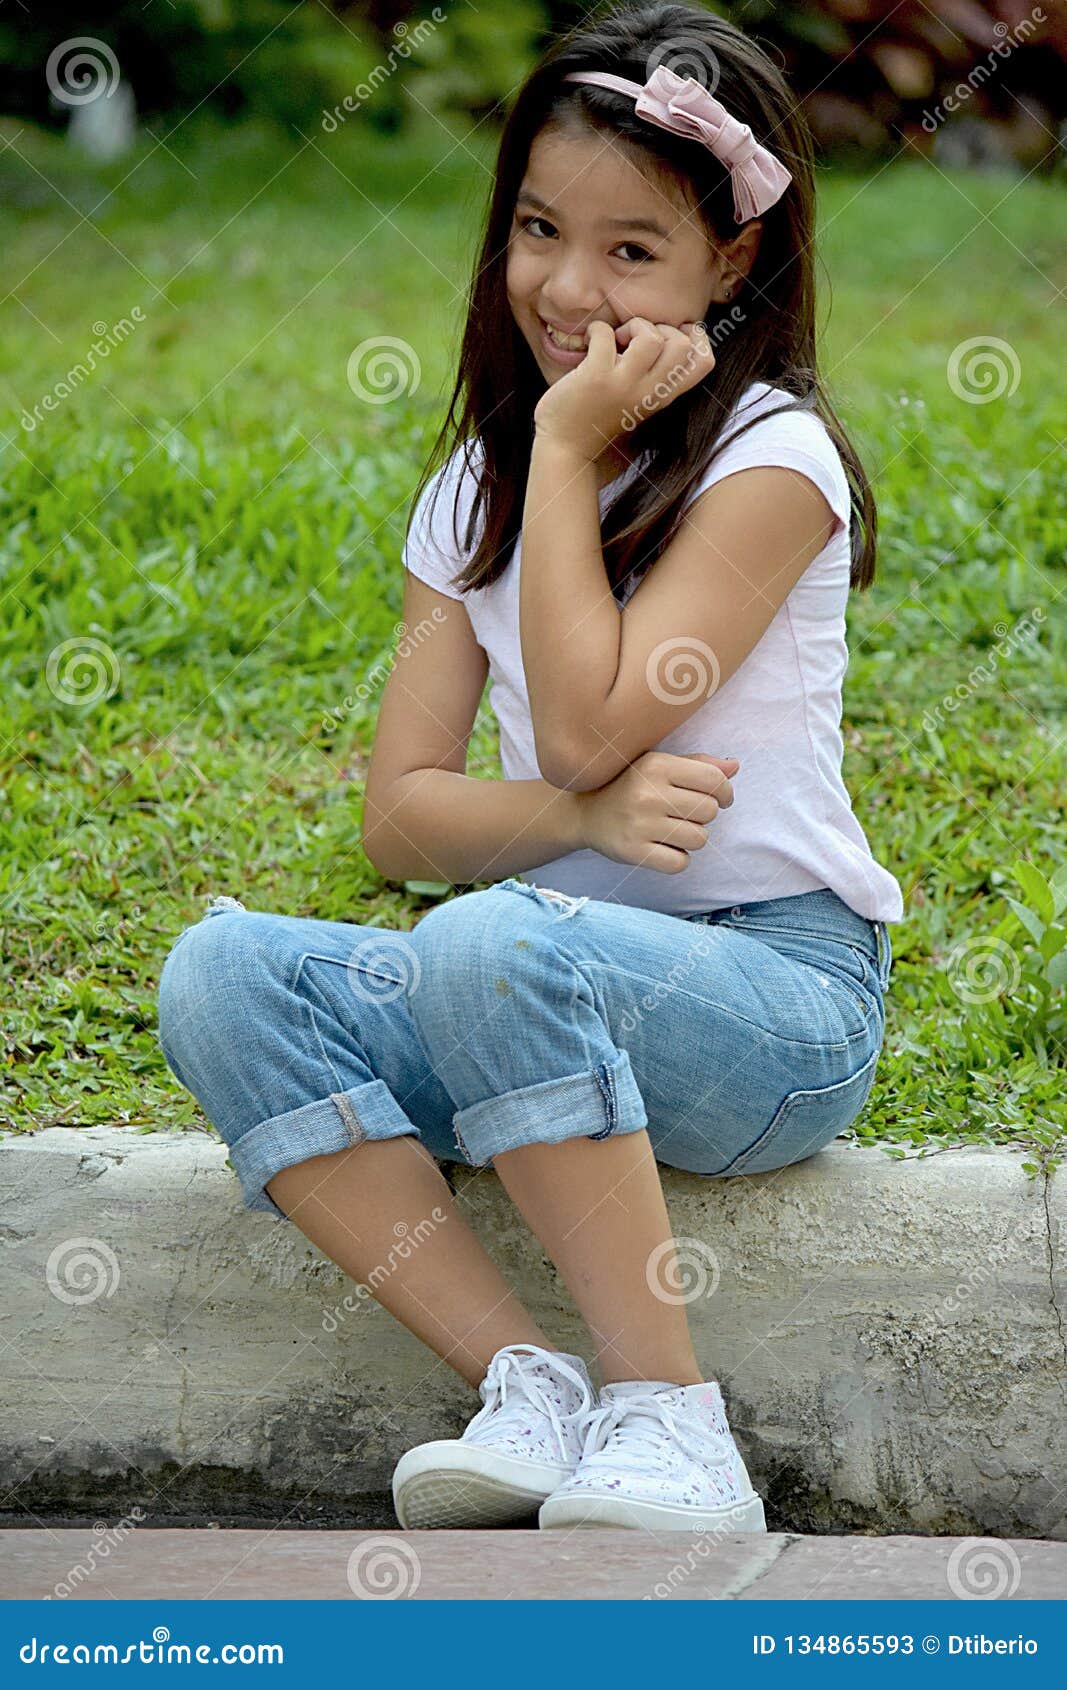 花园里的菲律宾女人高清摄影大图-千库网